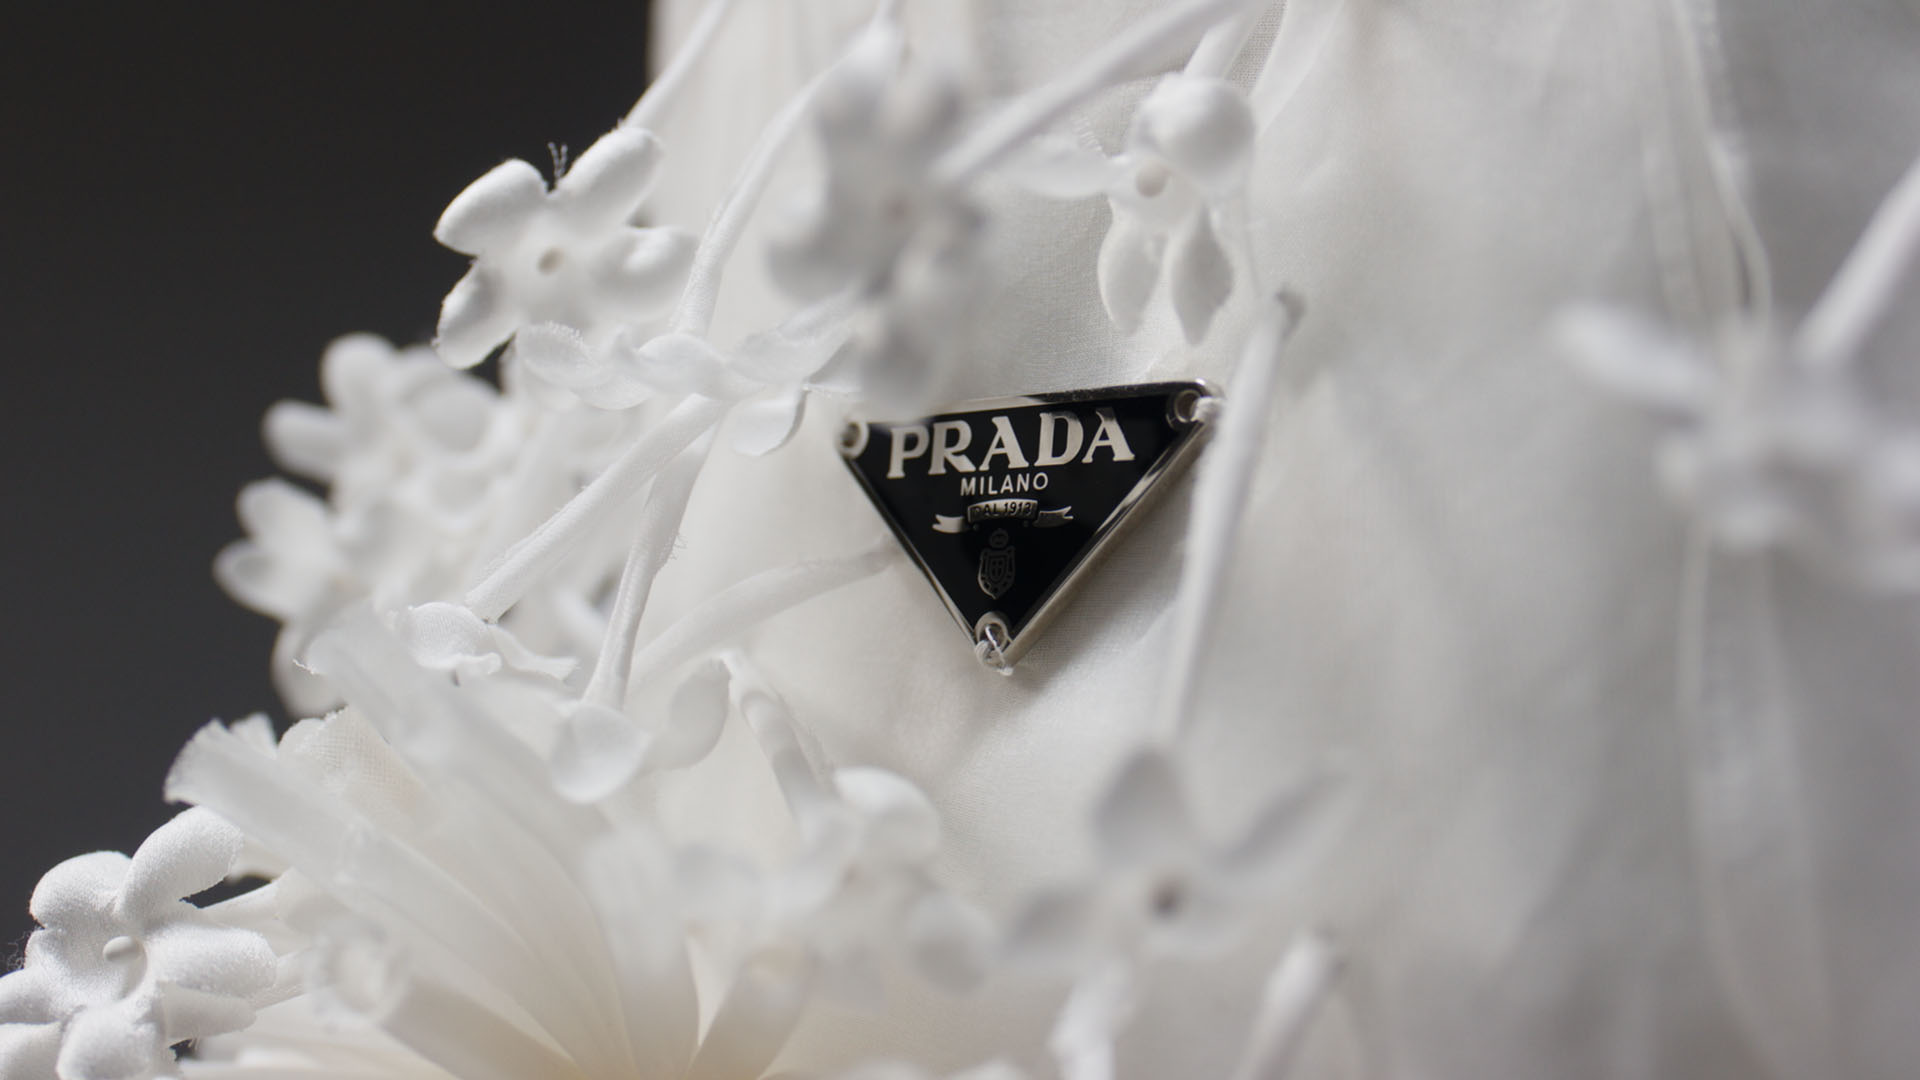 Prada Made in Prada - Creating Beauty